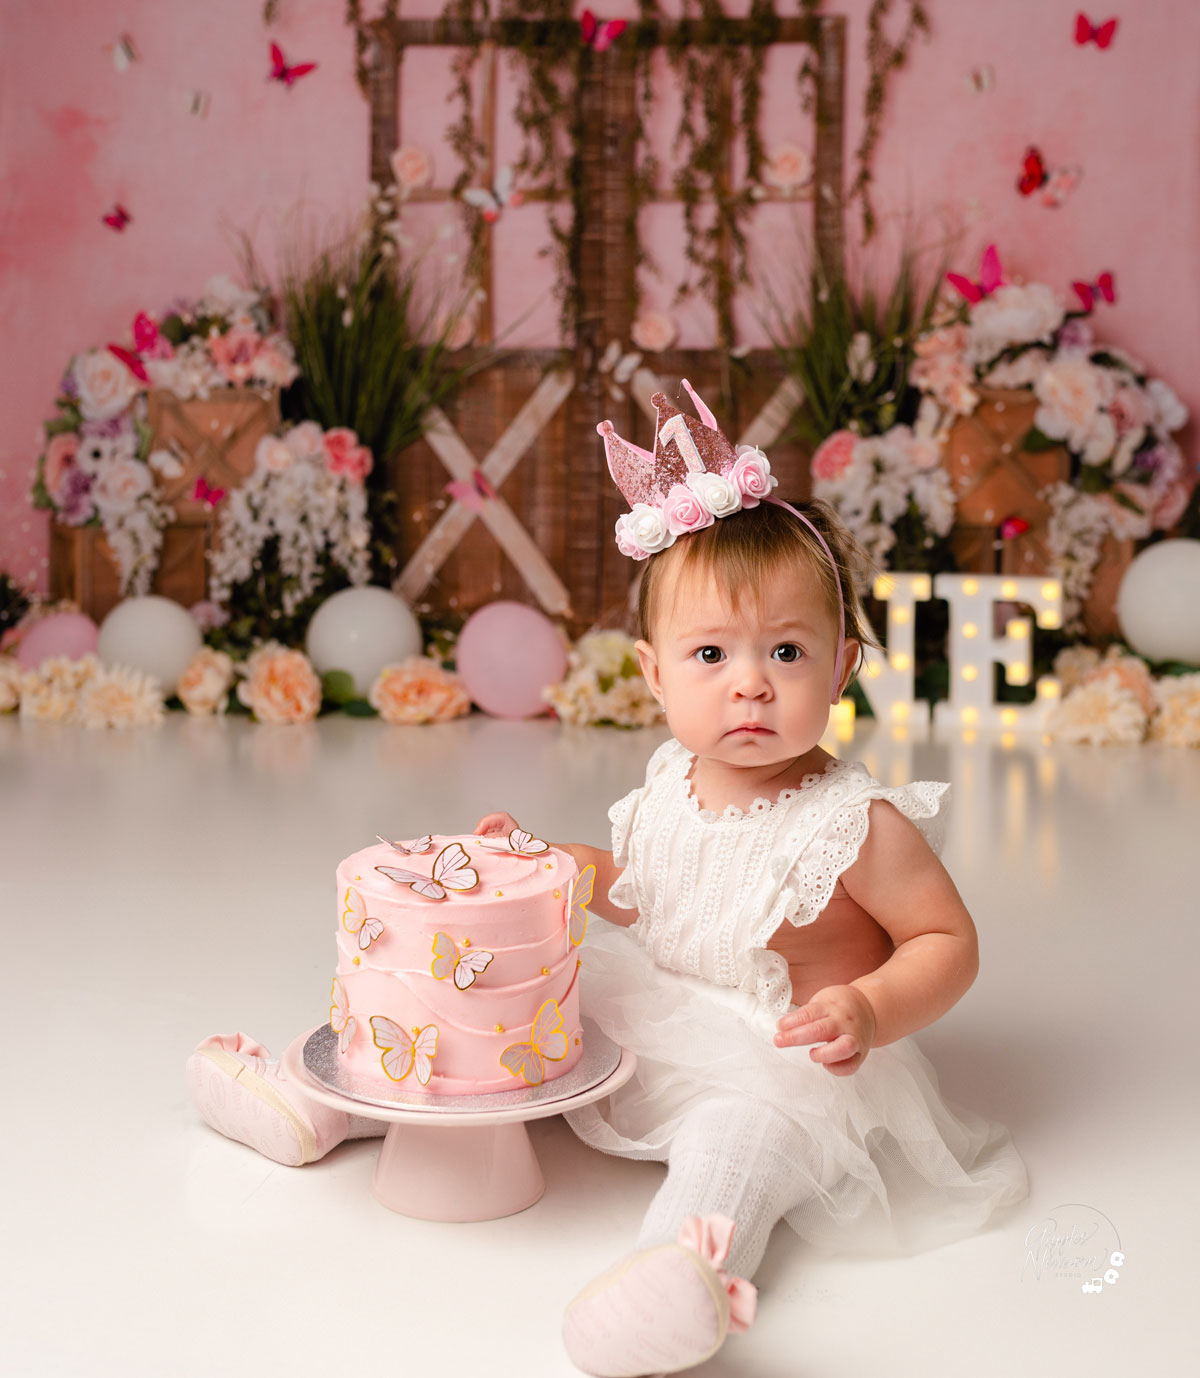 Brampton Cake Smash Photographer — Life By PhotoKitch